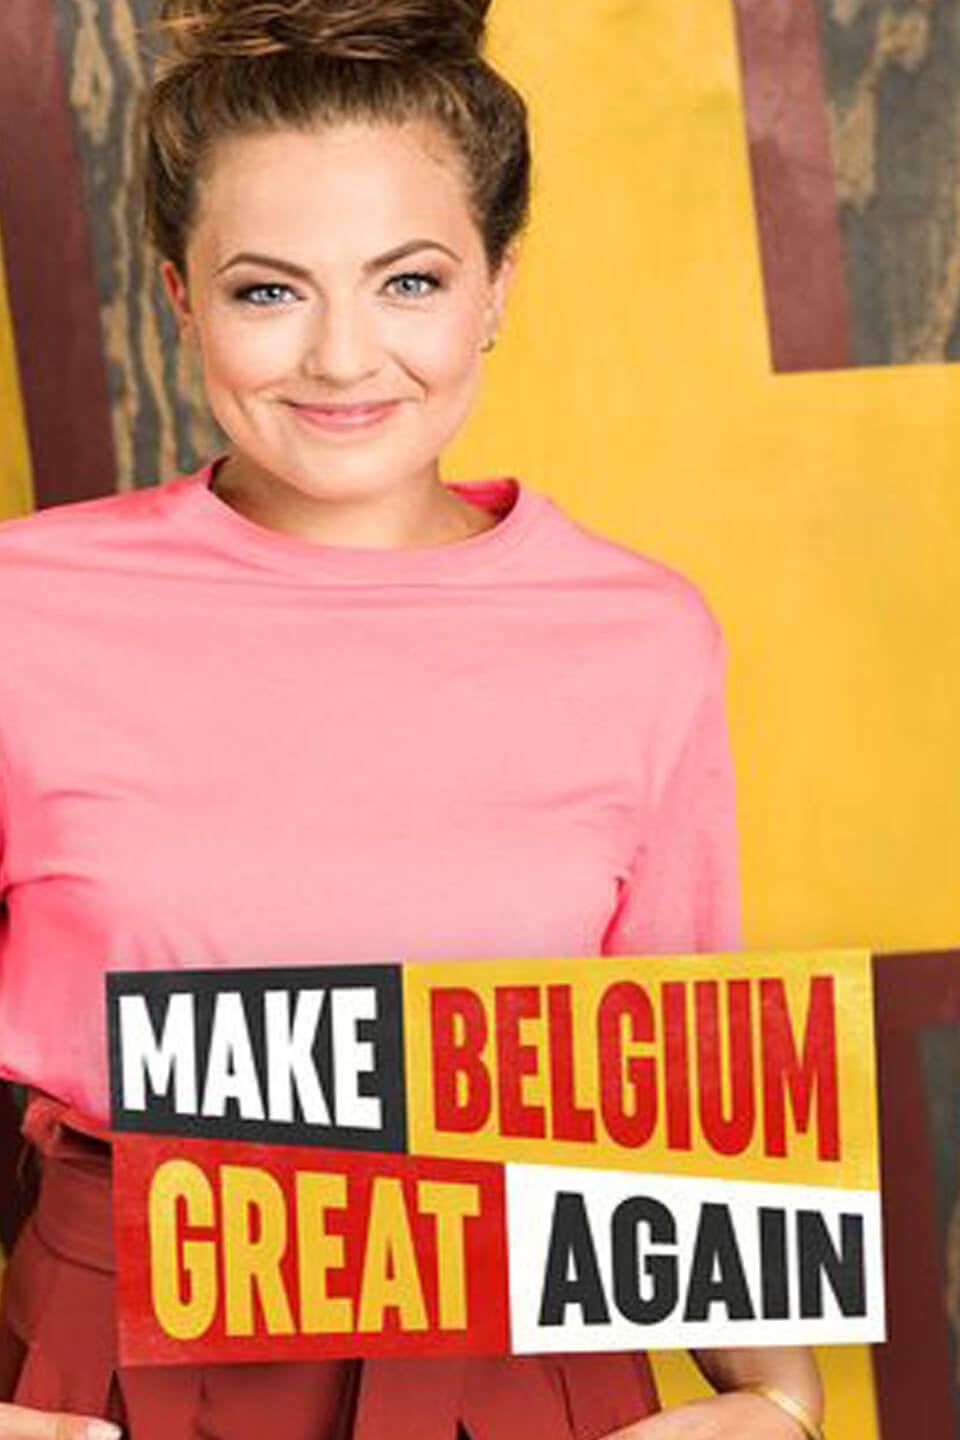 TV ratings for Make Belgium Great Again in Russia. VTM TV series